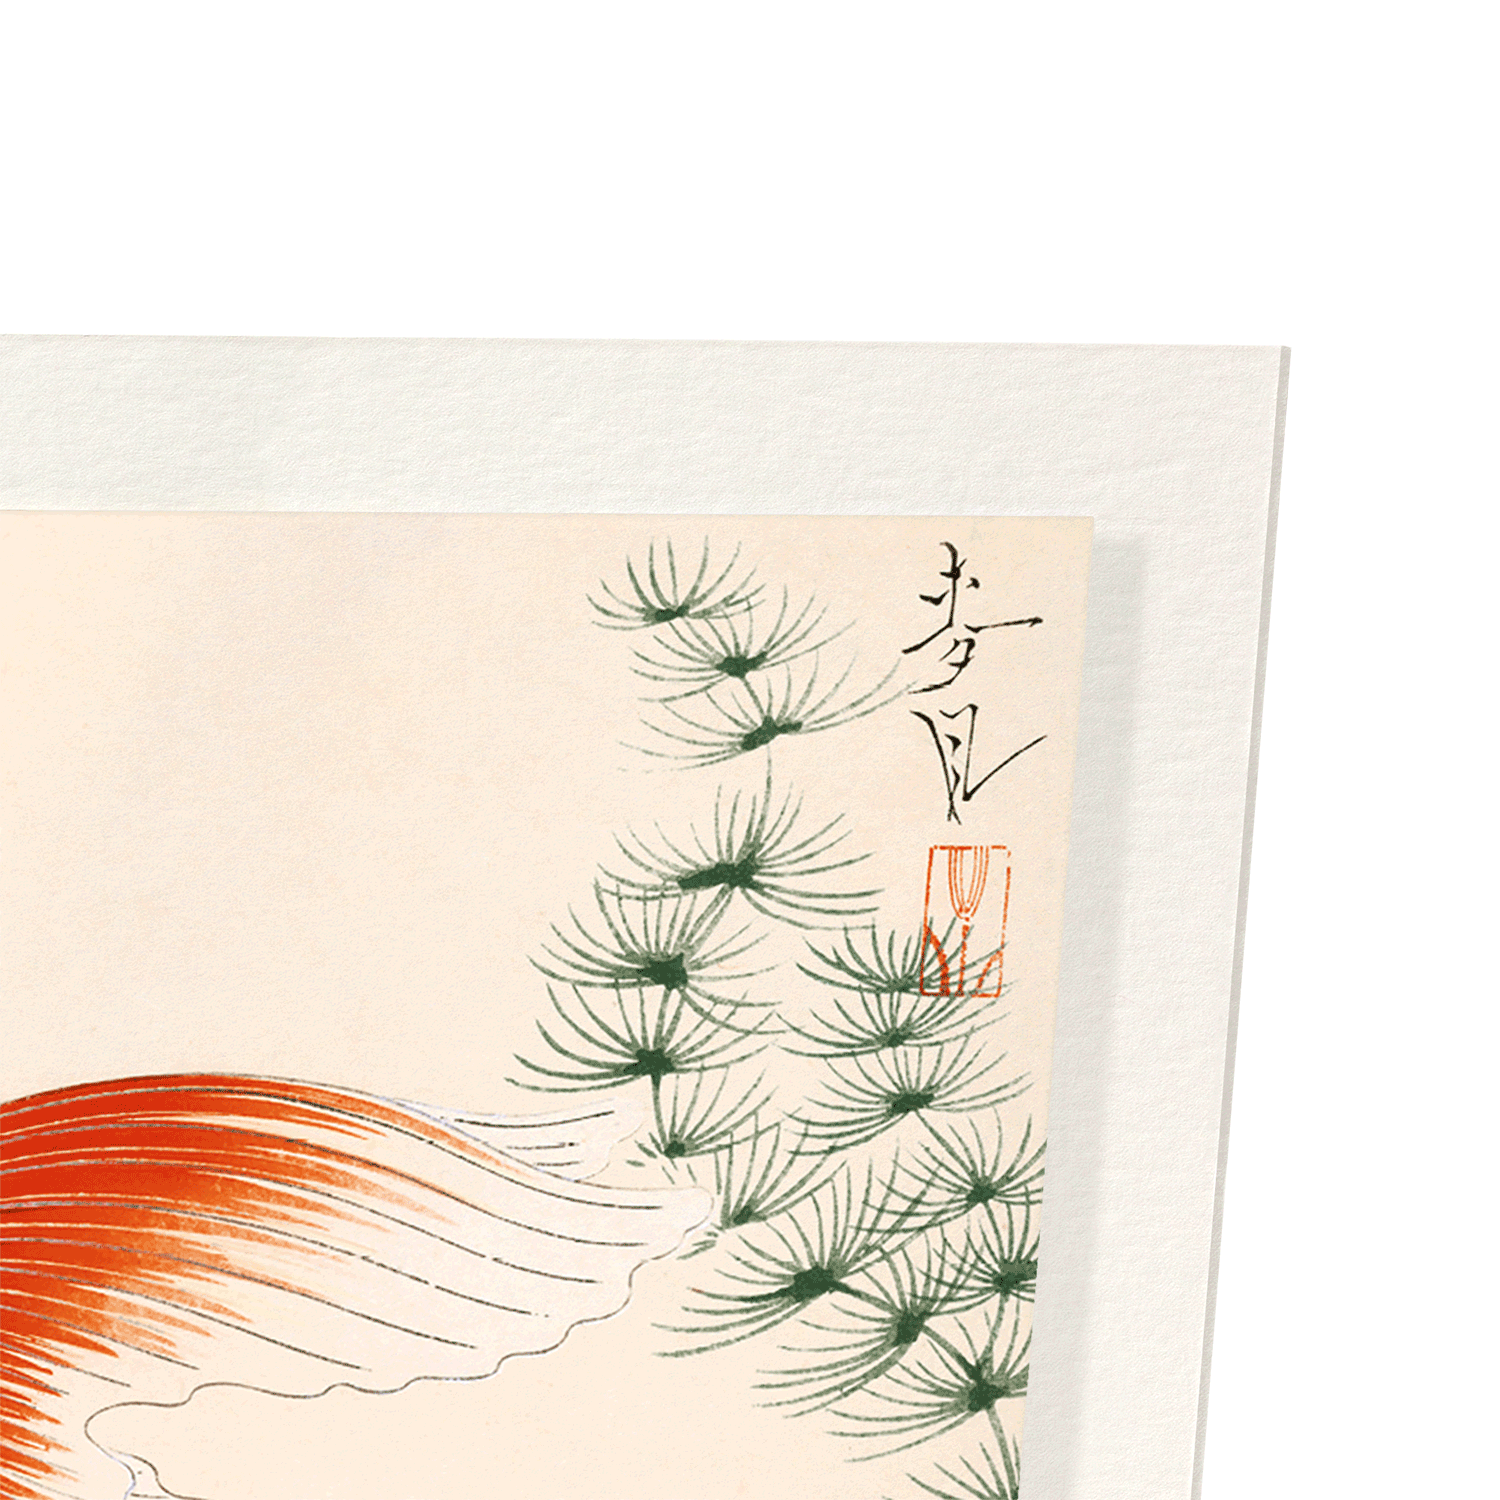 GOLDFISH: Japanese Art Print